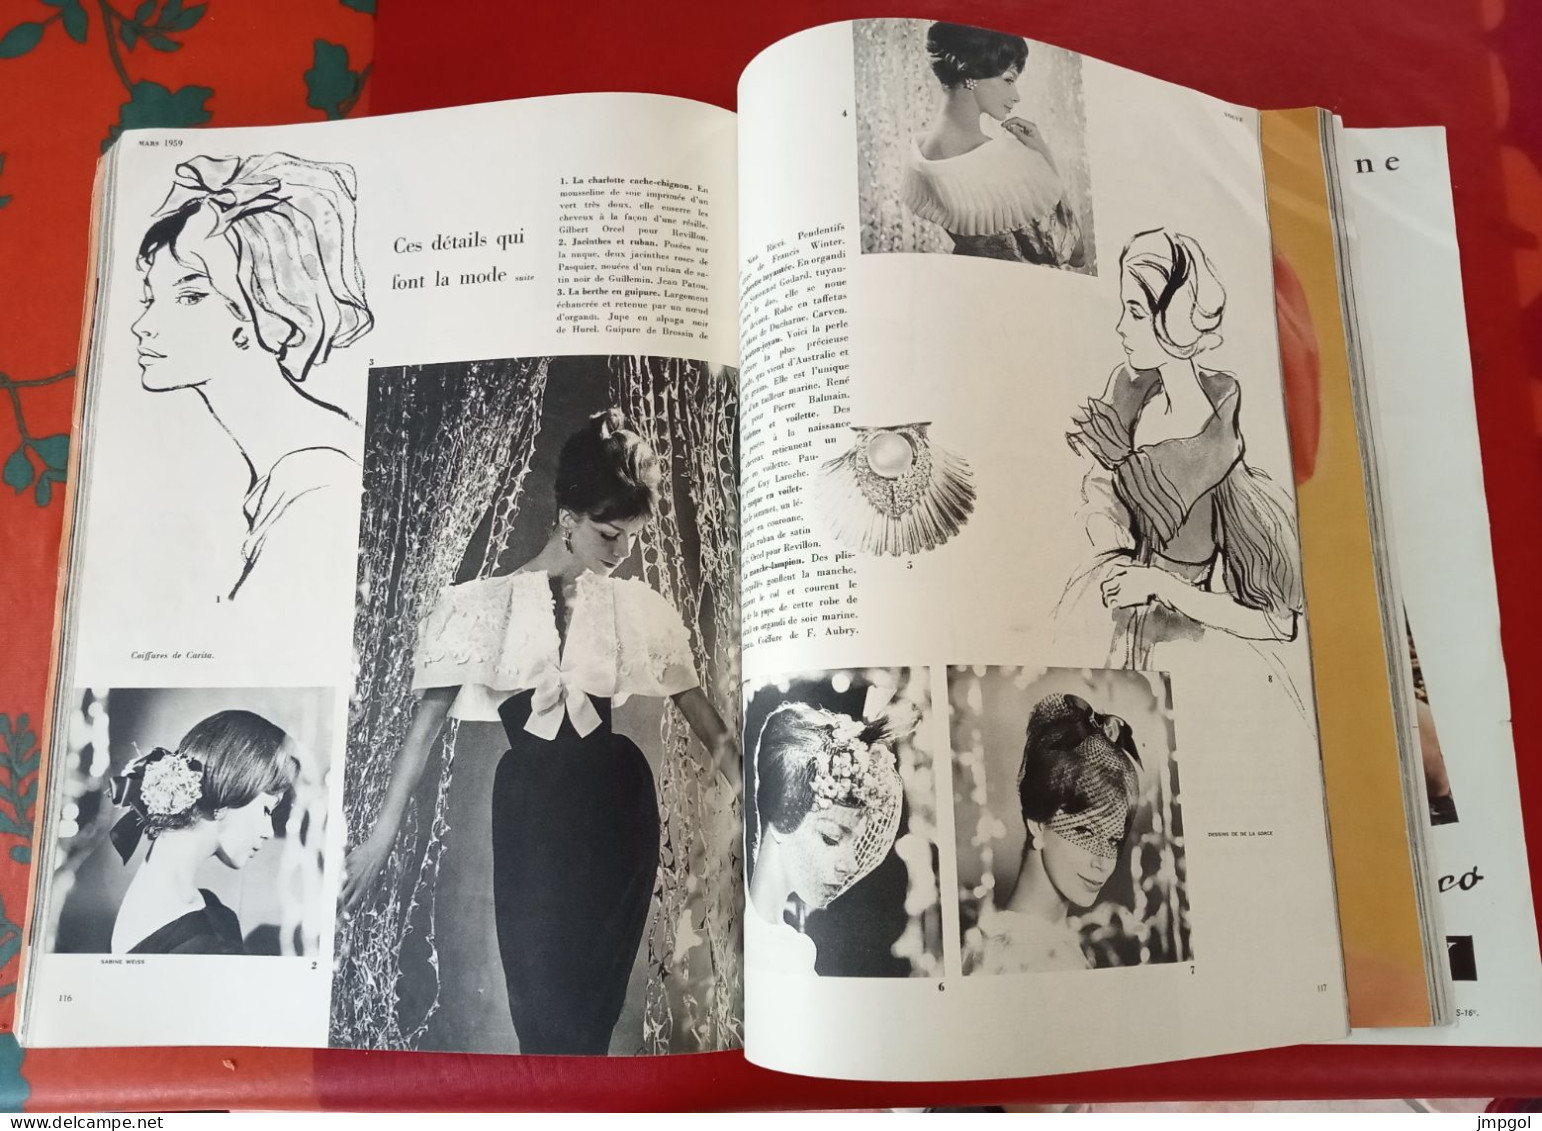 Vogue Mars 1959 Spécial Les Collections de Printemps Paris Tendance Grands Couturiers Carven  Jacques Heim Cardin Chanel